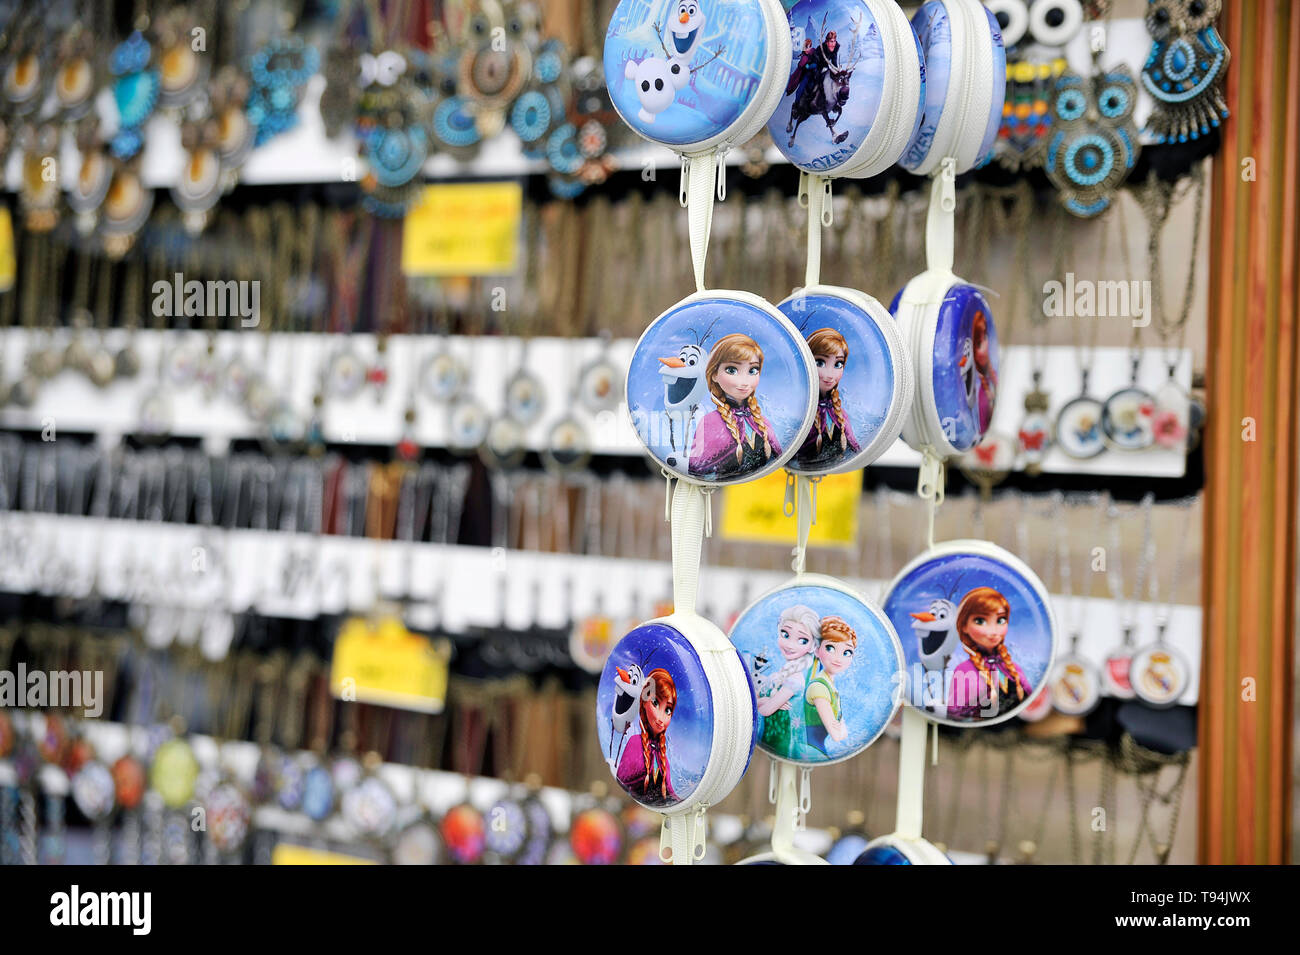 Frozen Disney stationery, merchandising & matériel scolaire à Ispahan, Iran Banque D'Images